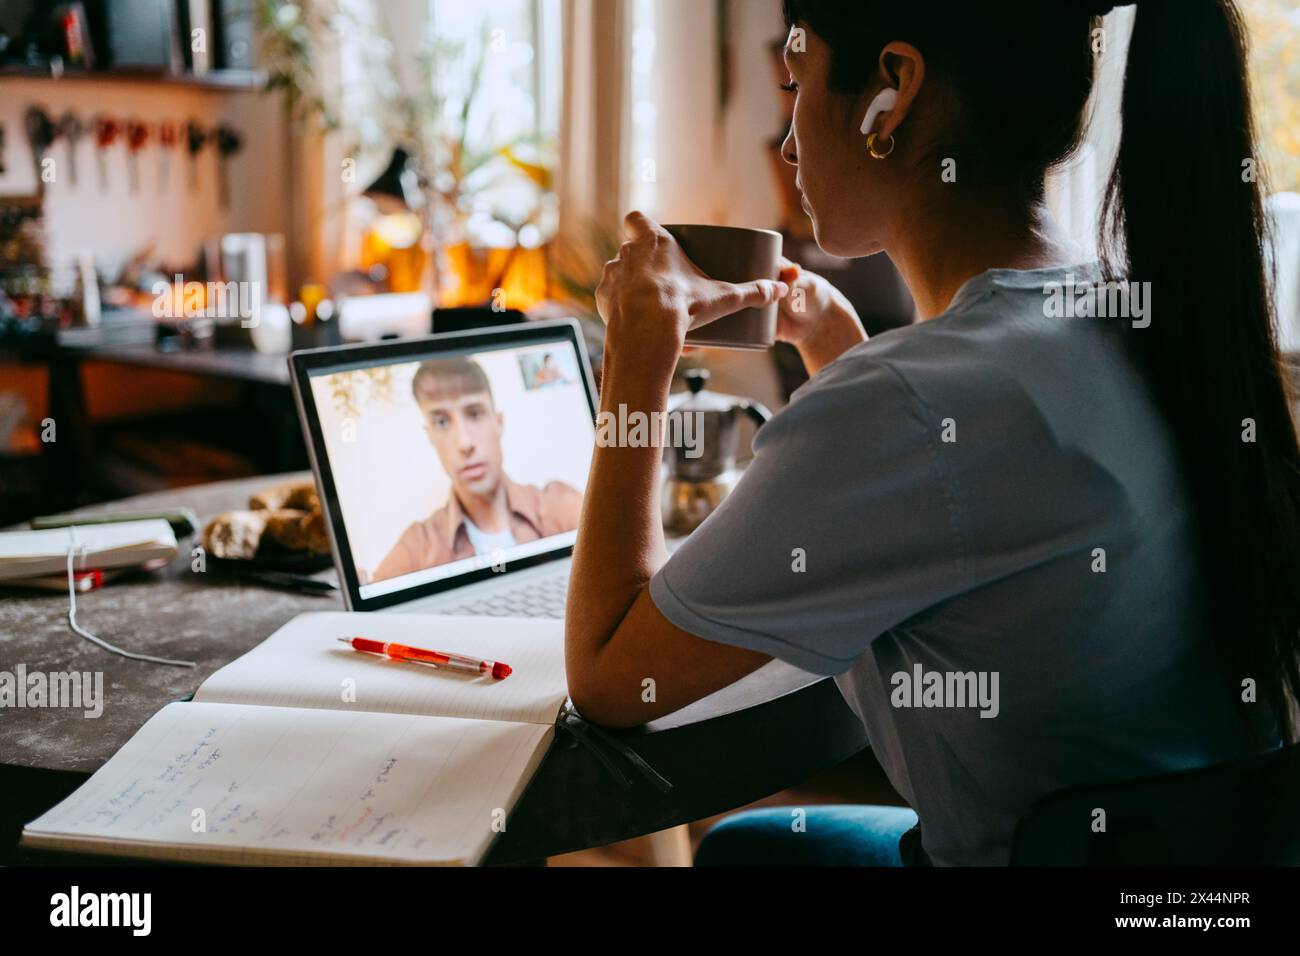 Junge Freiberuflerin, die eine Kaffeetasse hält, während sie im Heimbüro Videogespräche mit einem Kollegen auf einem Laptop führt Stockfoto